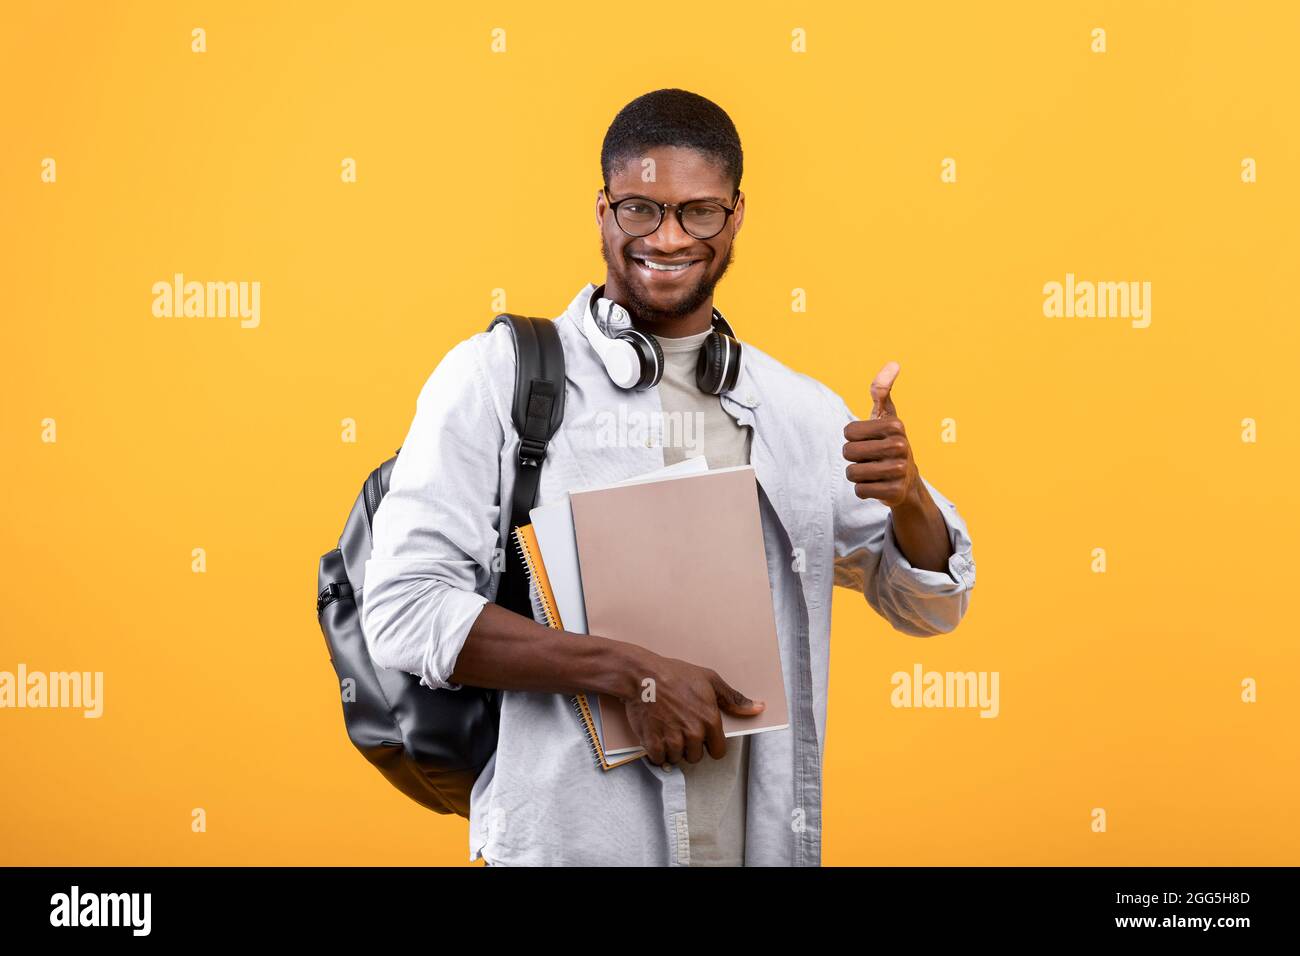 Studente afro-americano che mostra pollice su, posando con zaino, notebook e cuffie sul collo, sfondo giallo Foto Stock